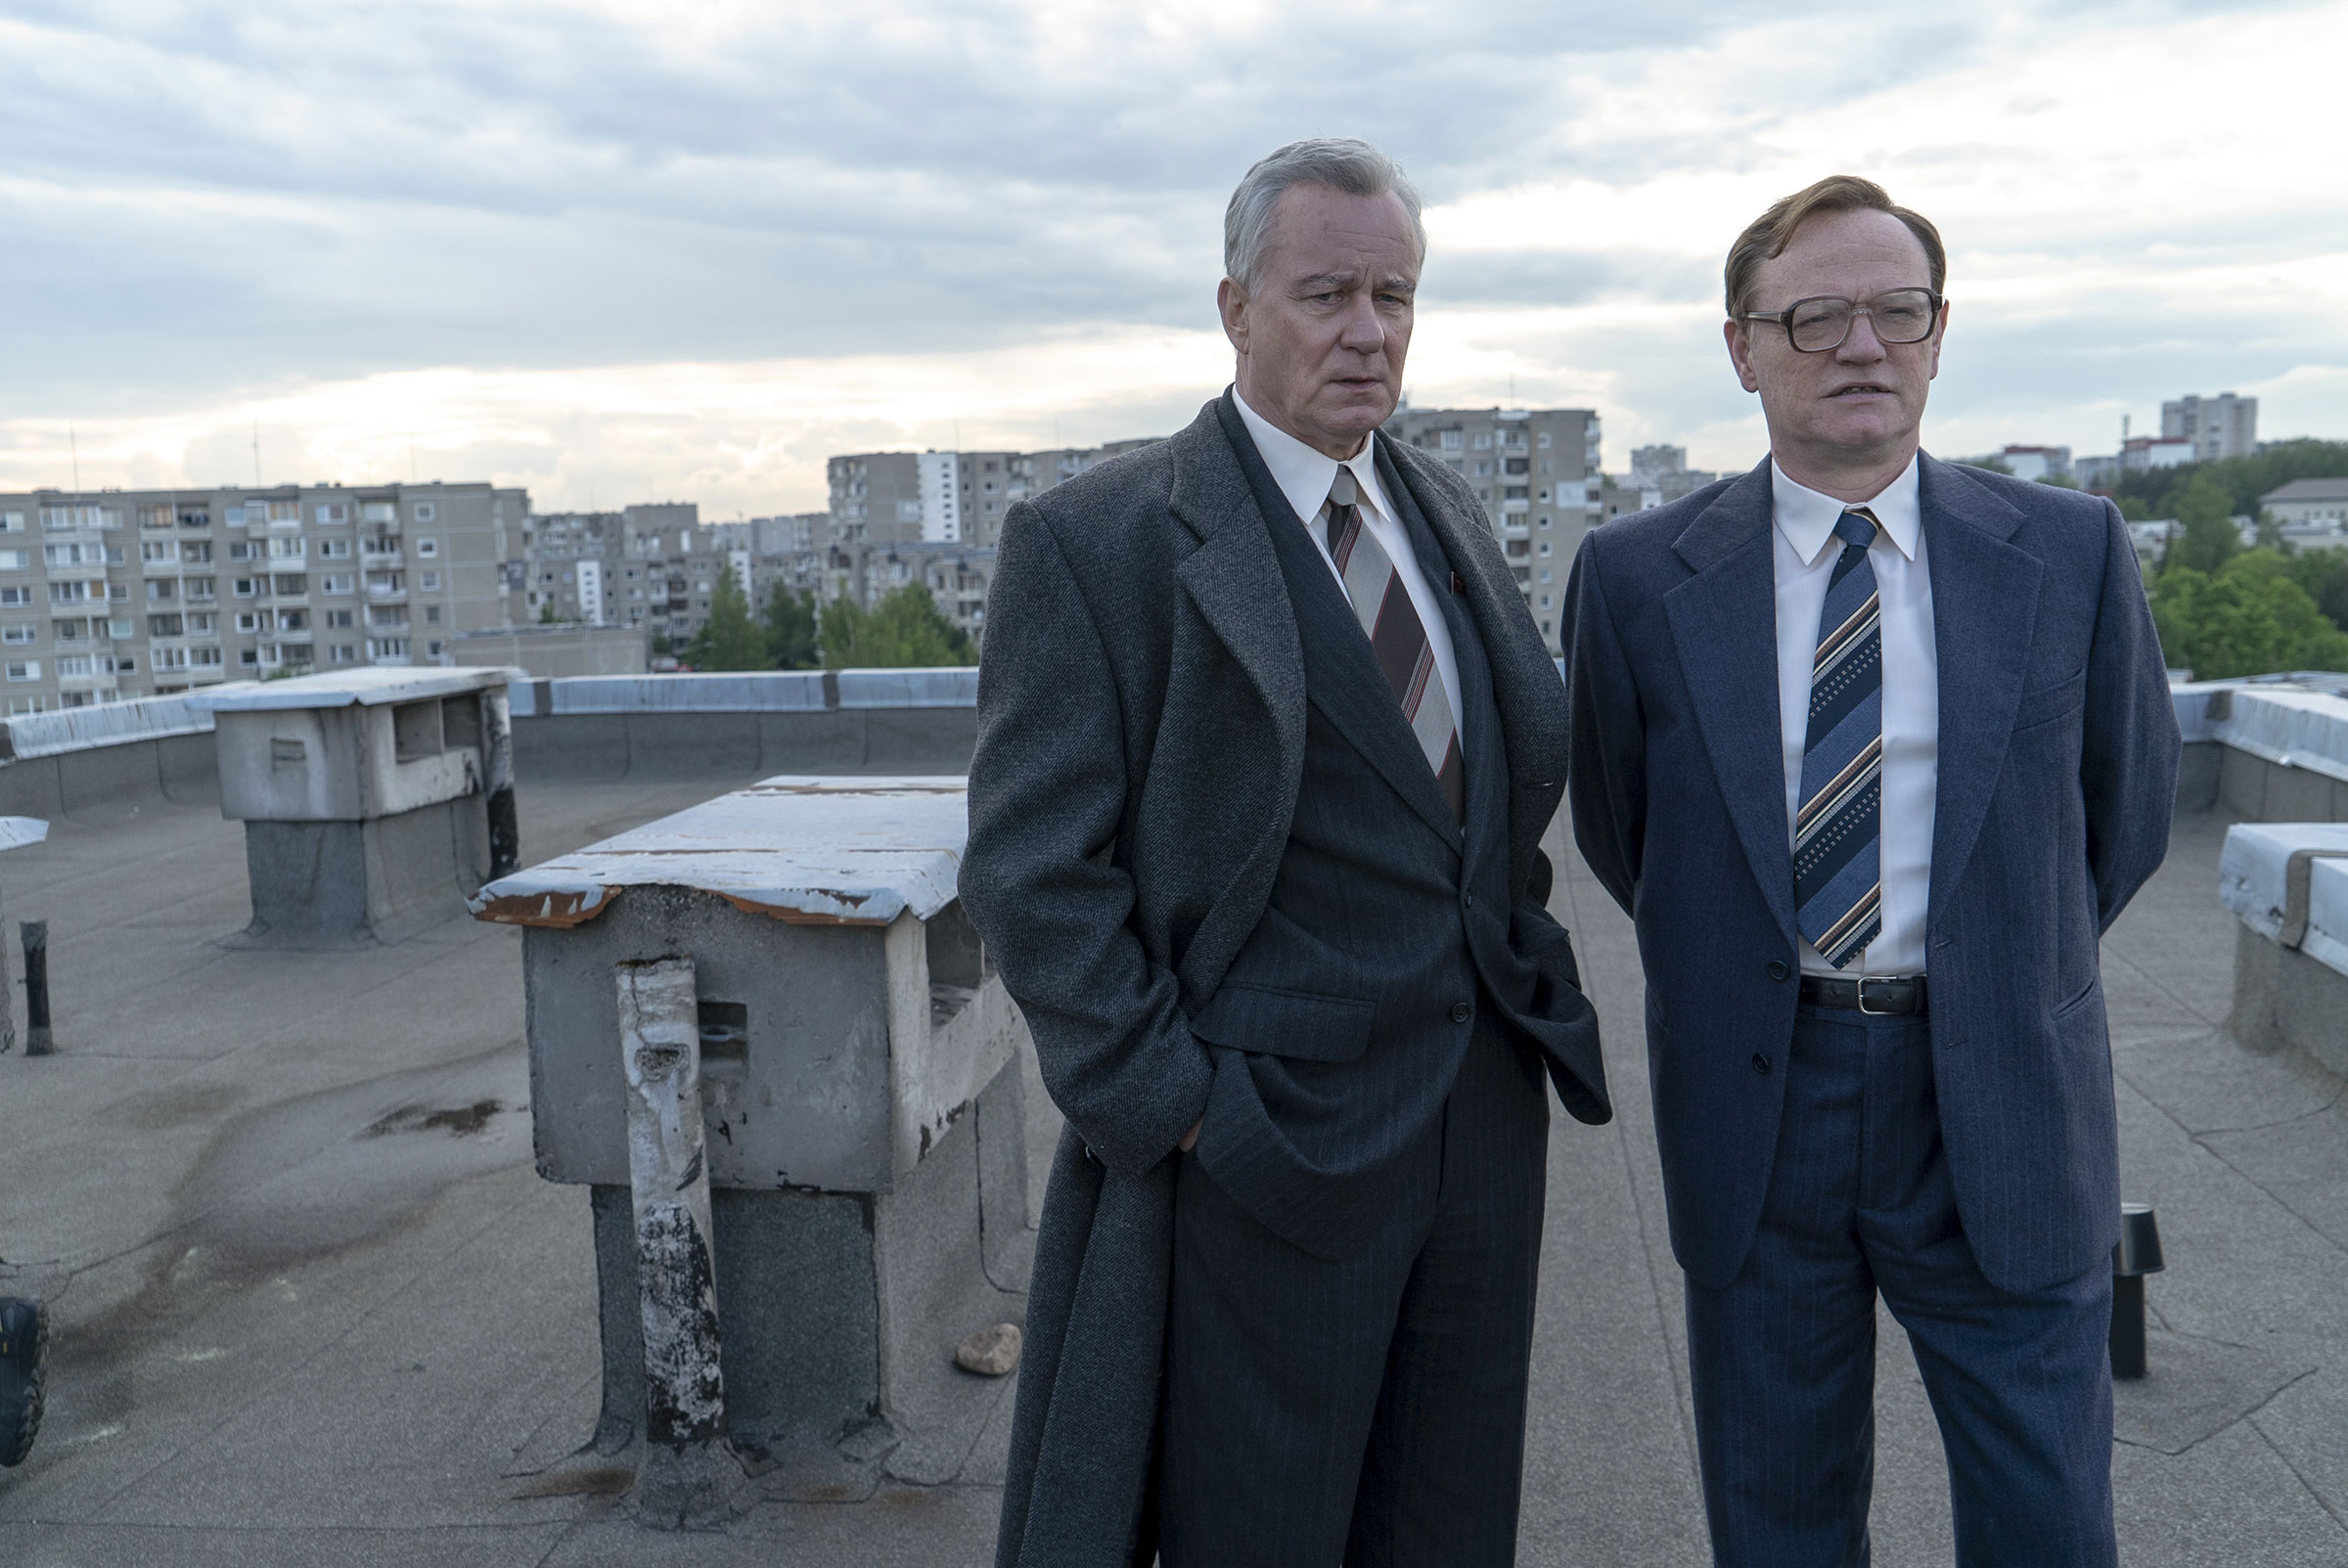 Chernobyl : le gouvernement russe préparerait sa propre série en réponse à HBO